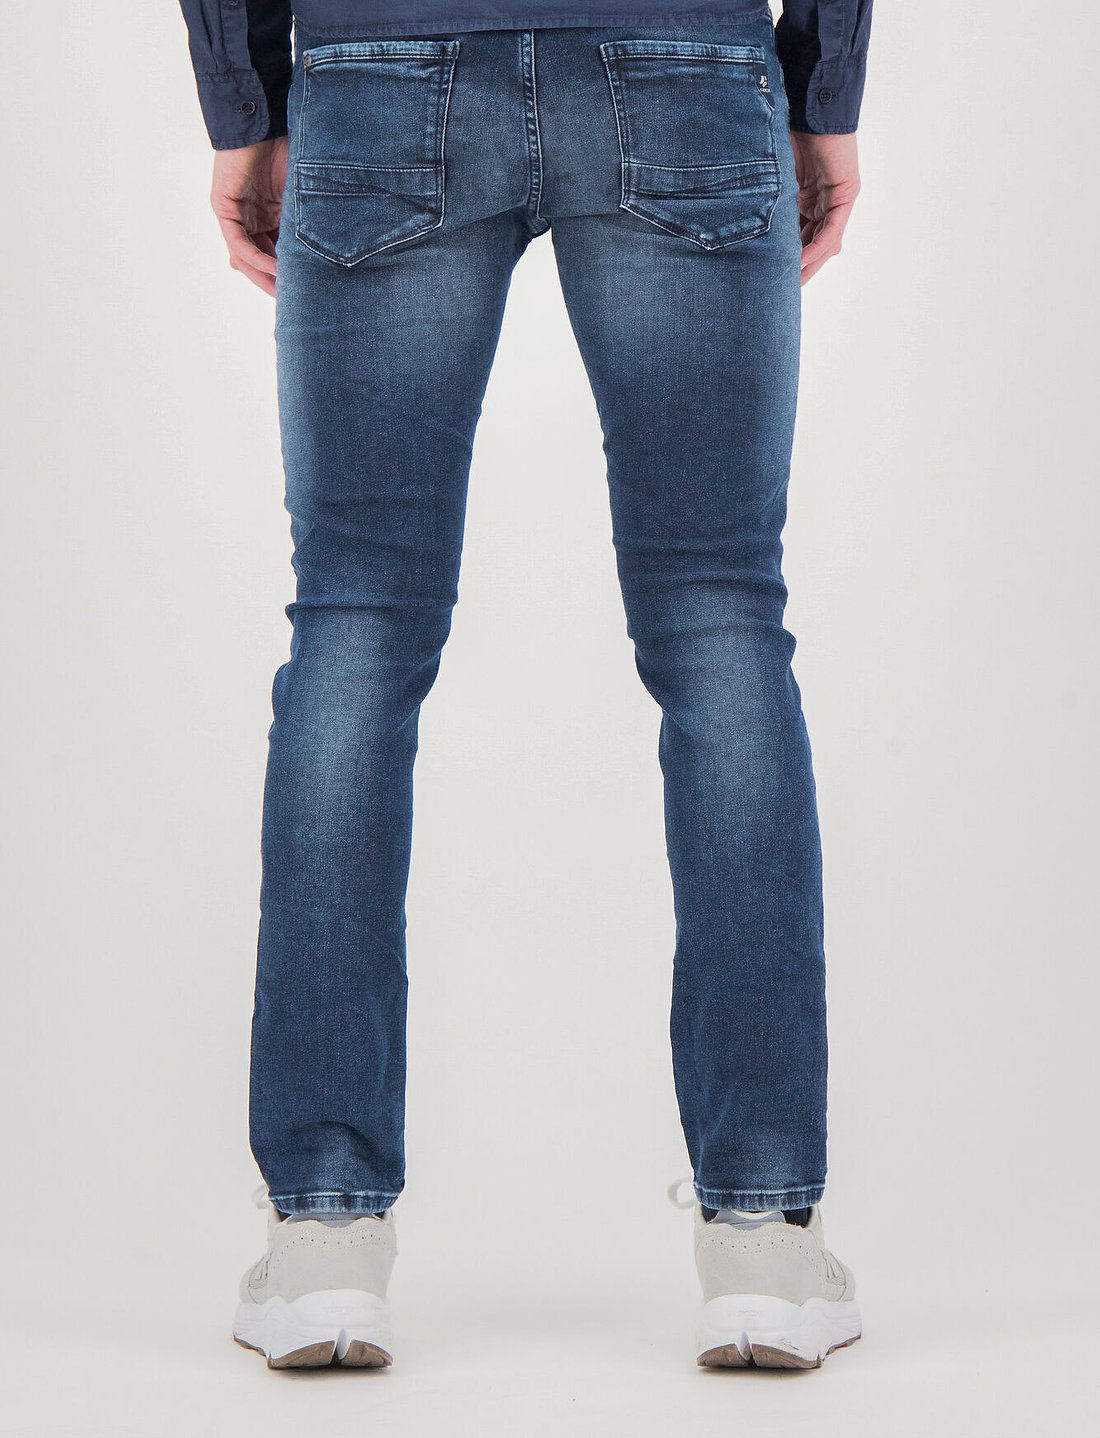 630/34 Slim - Col.5520_savio jeans Garcia